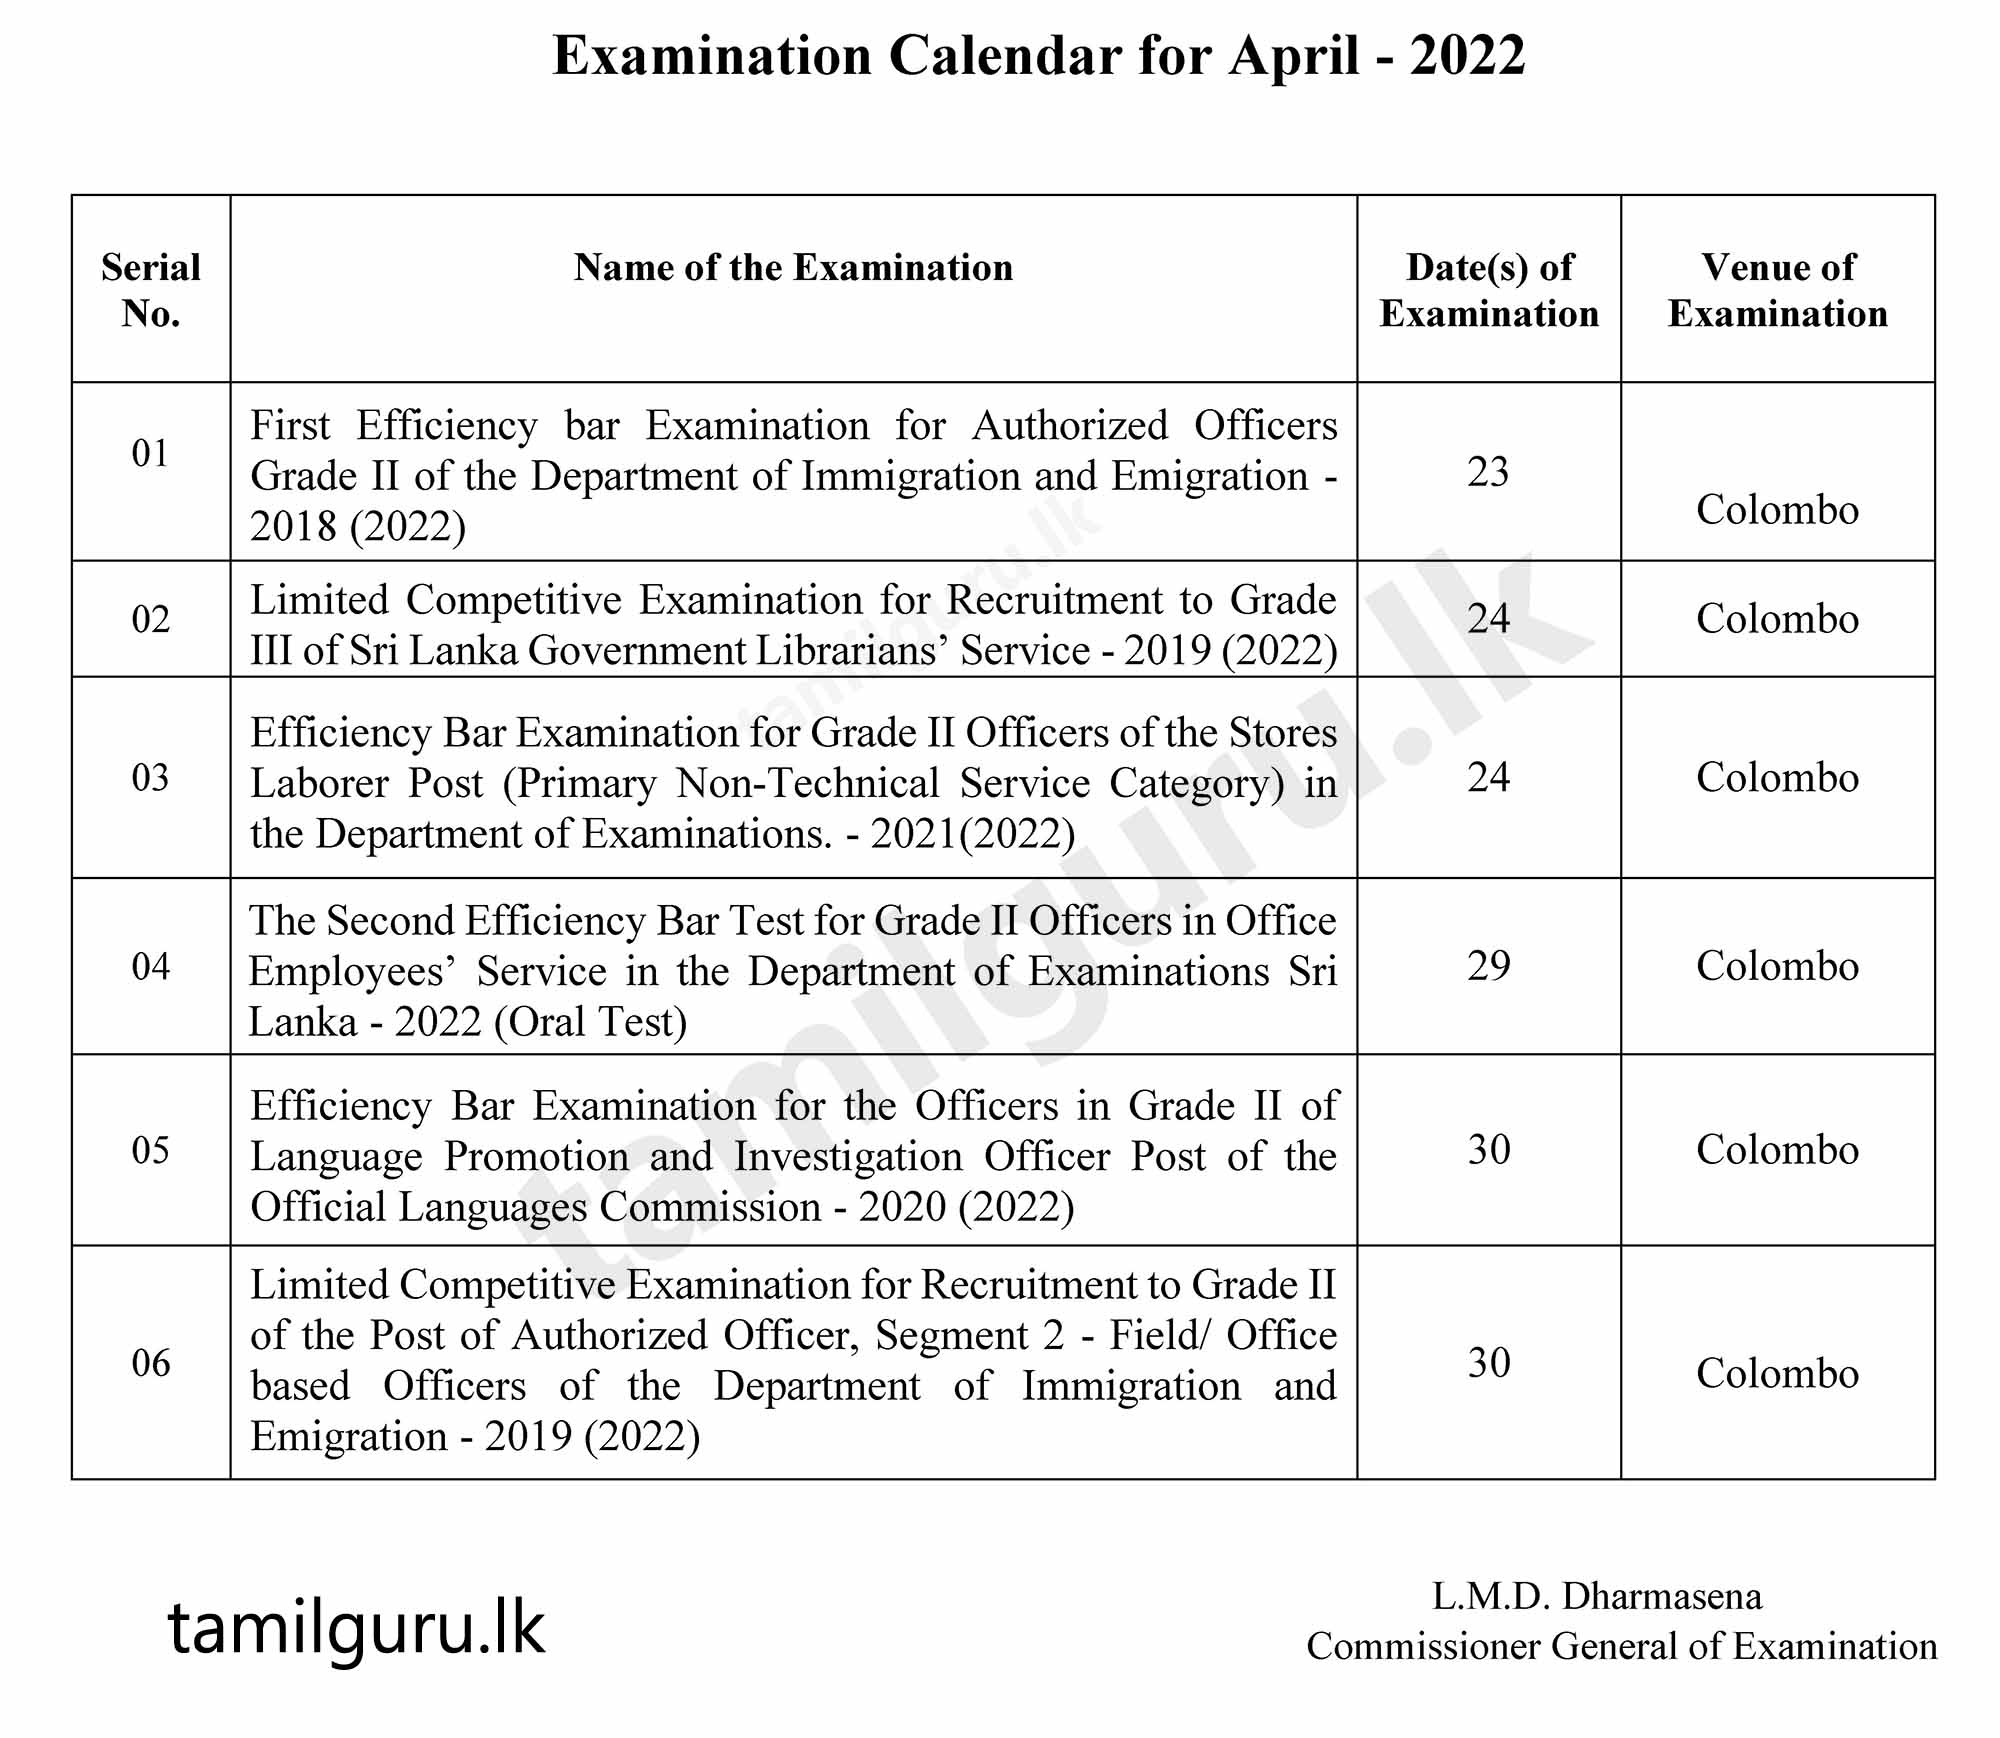 Examination Calendar for April - 2022
